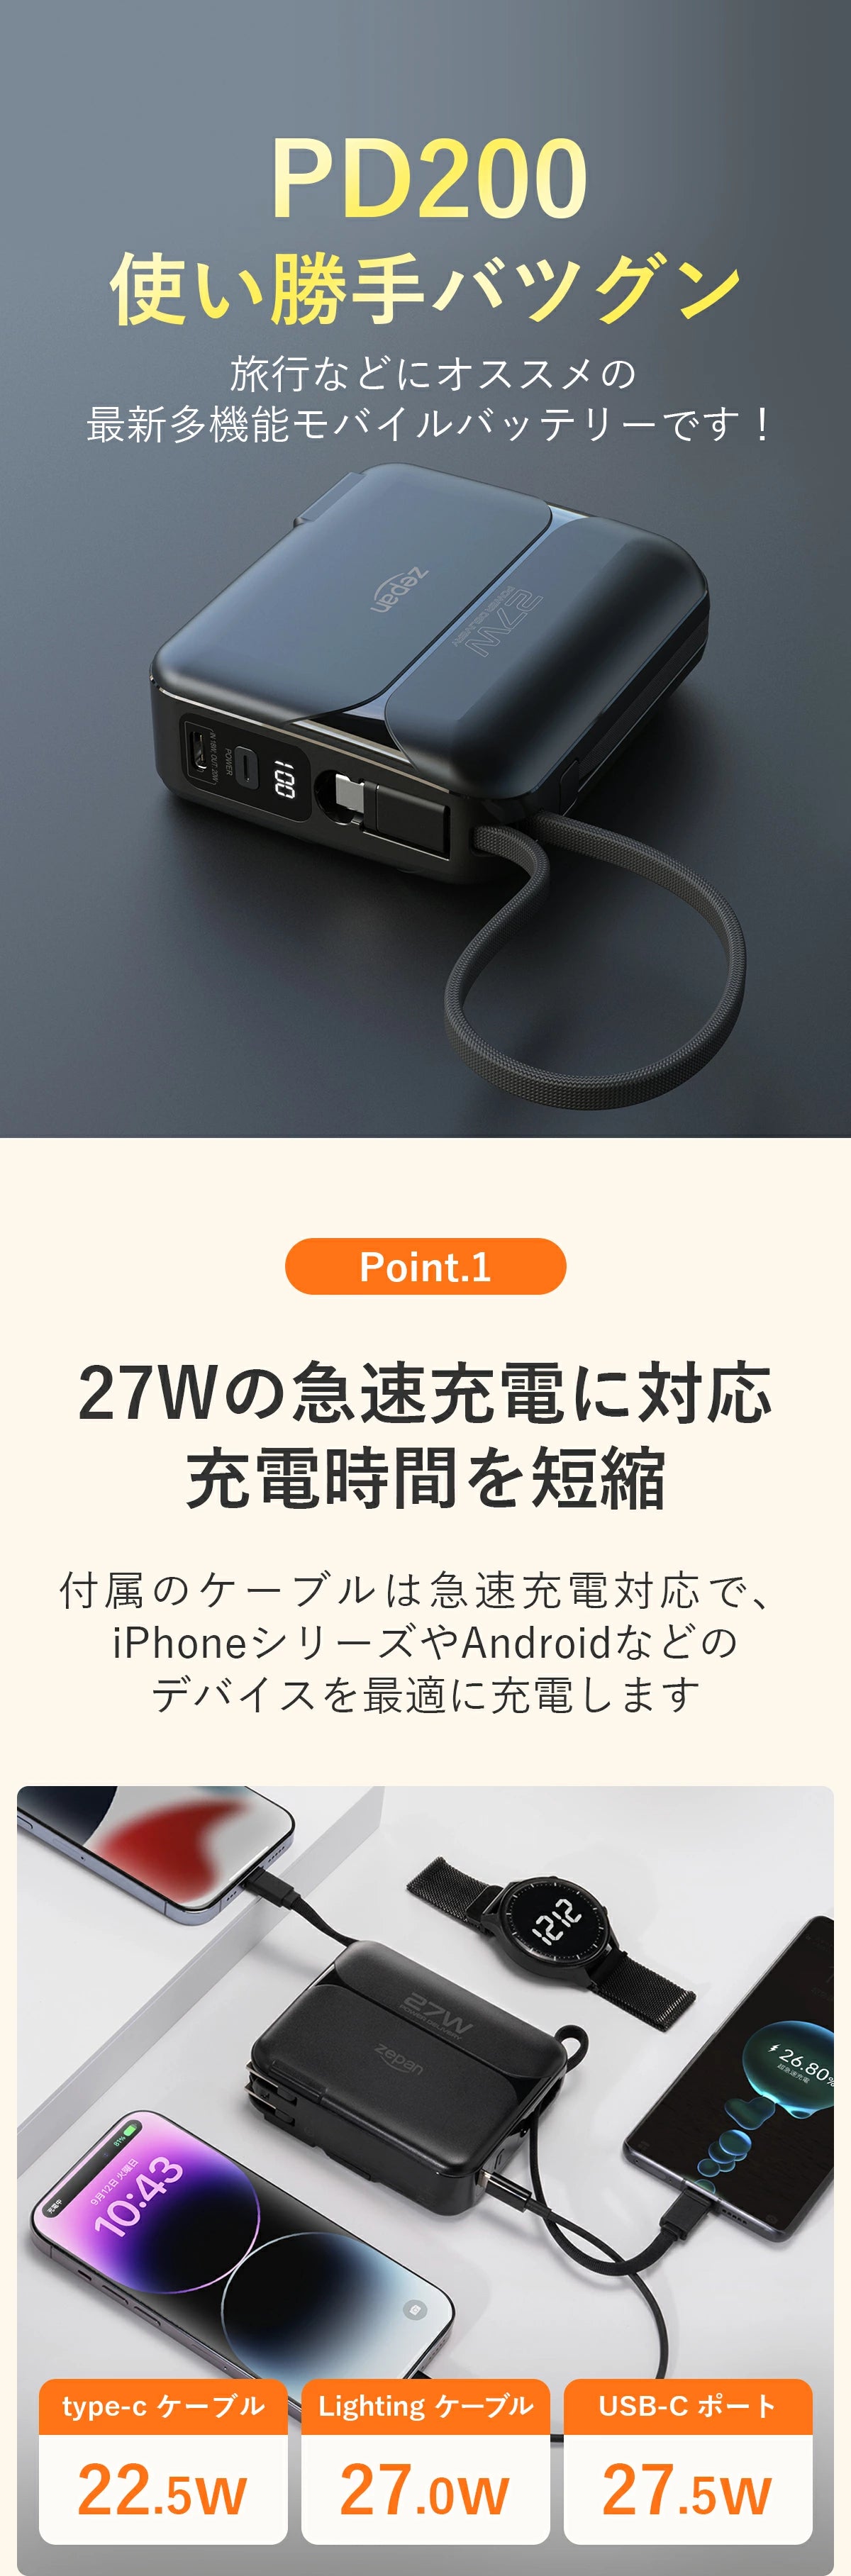 【2本ケーブル内蔵】モバイルバッテリー 急速充電 zepan PD200W